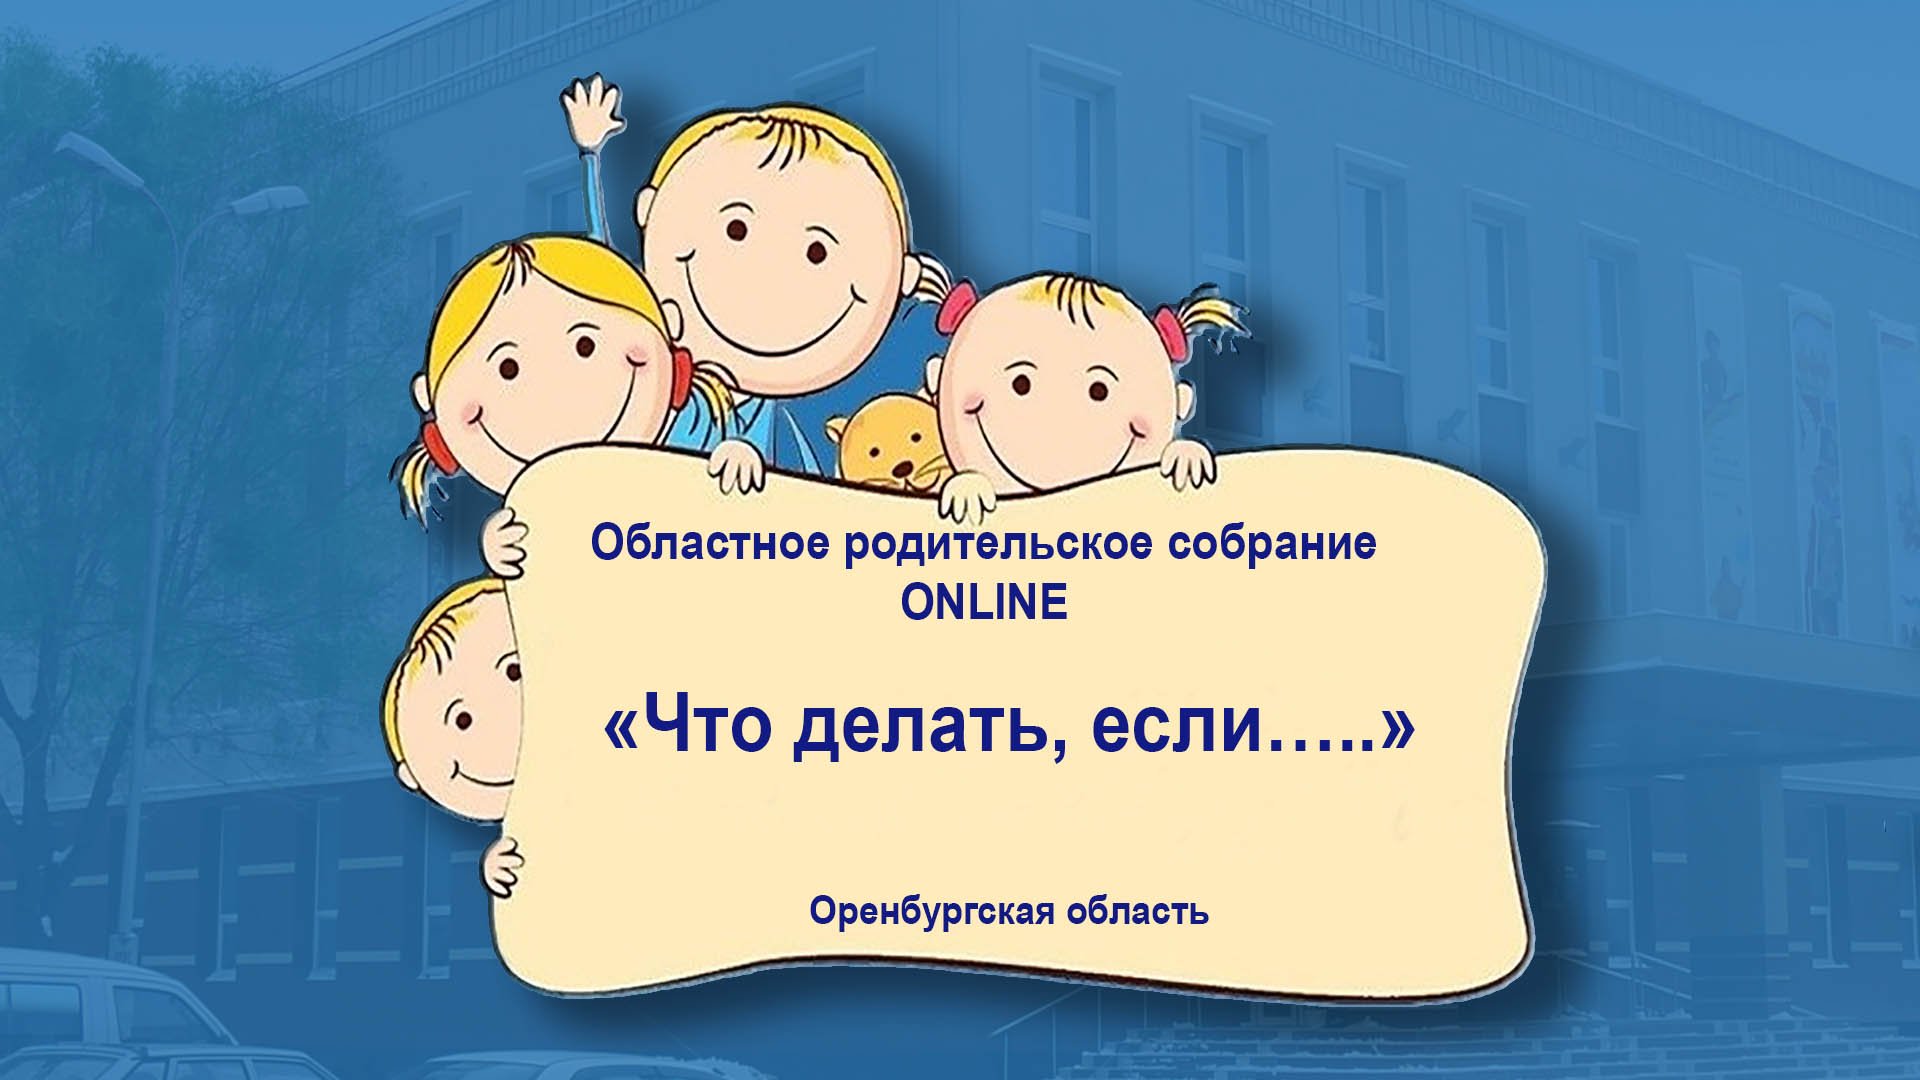 Онлайн-трансляция областного родительского собрания «Что делать, если…..»